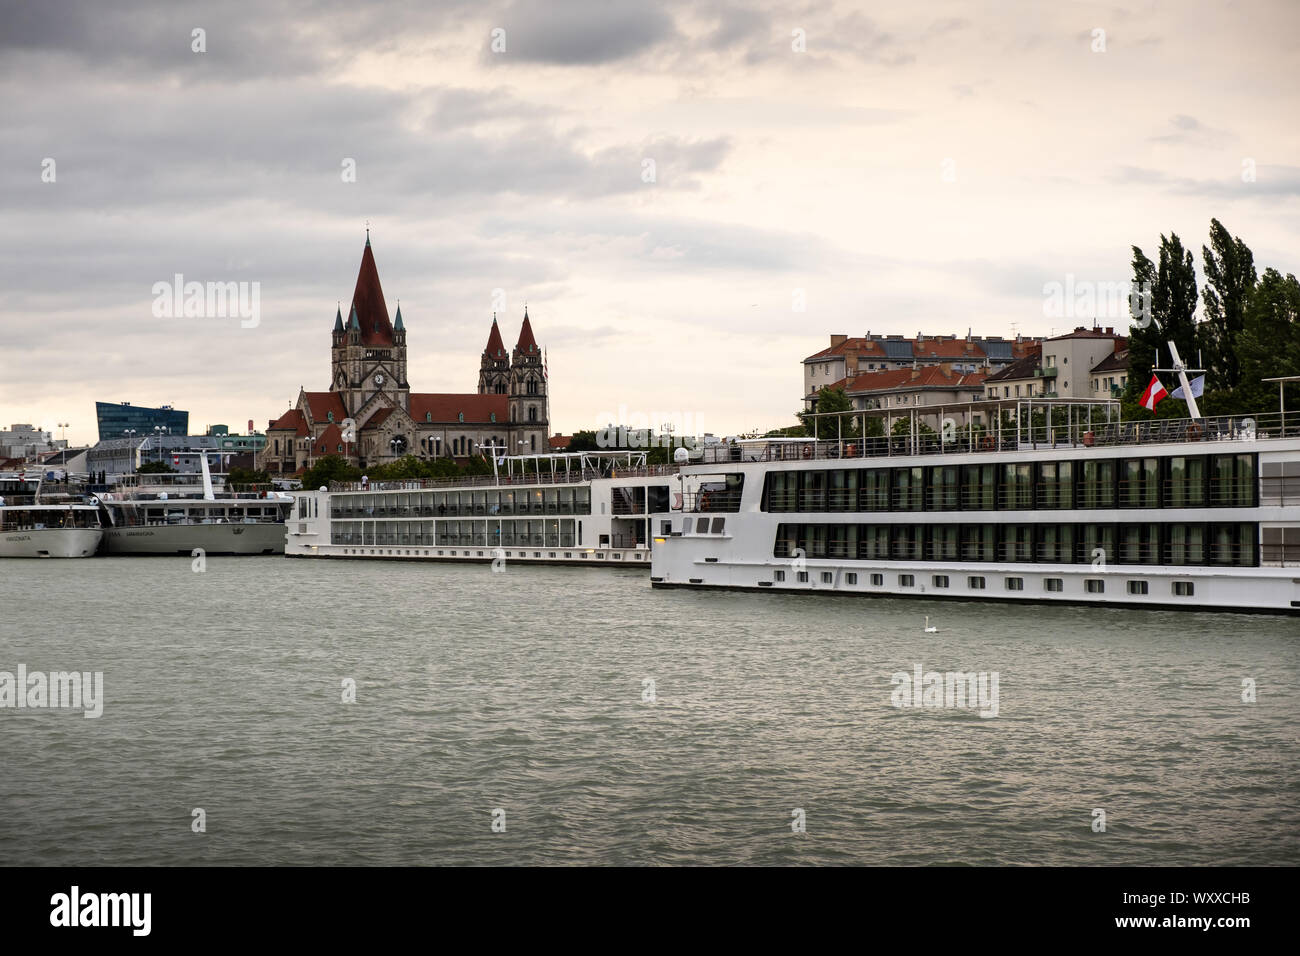 Viena, Austria - Agosto 21, 2019: puerto de cruceros en el río Zwischenbrucken Foto de stock